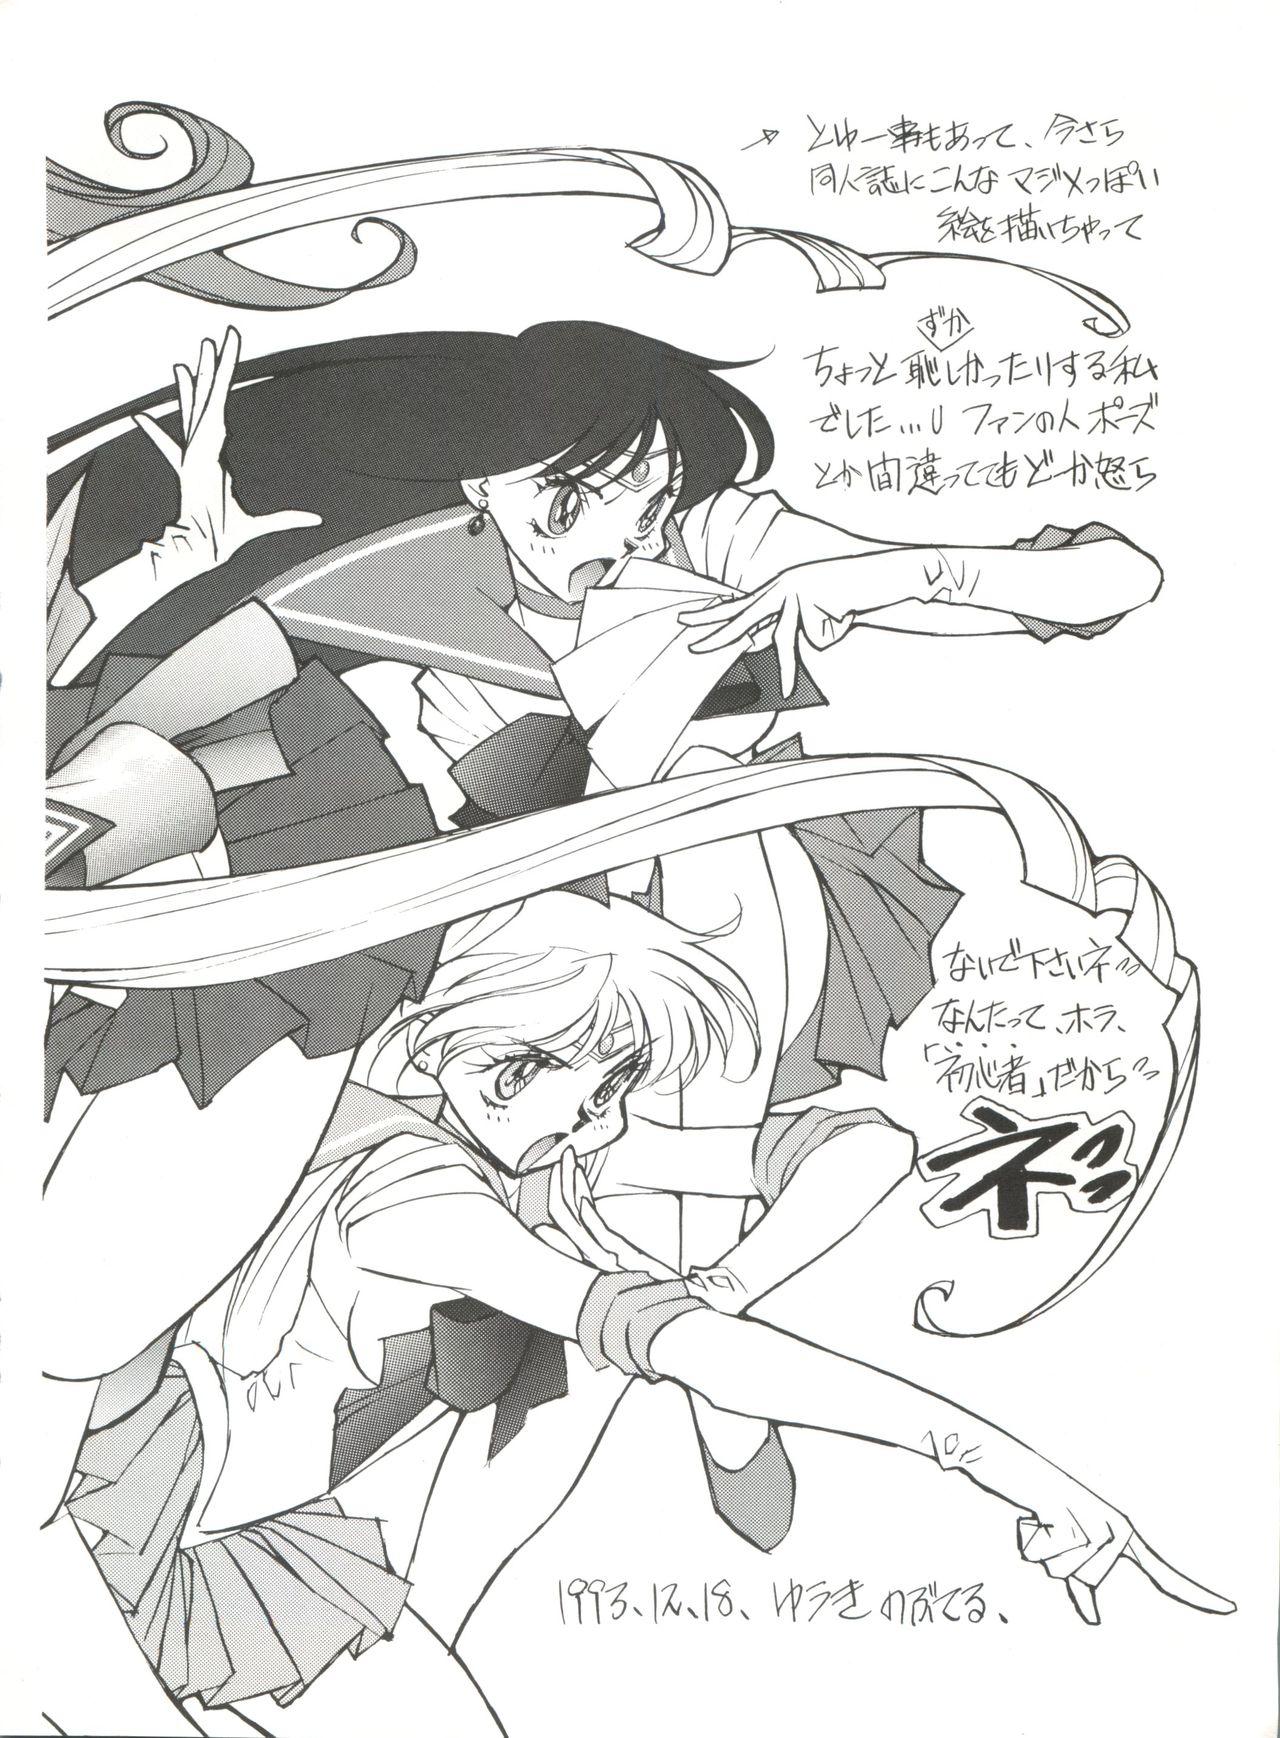 Glory Hole Gekkou 4 - Sailor moon Suruba - Page 7